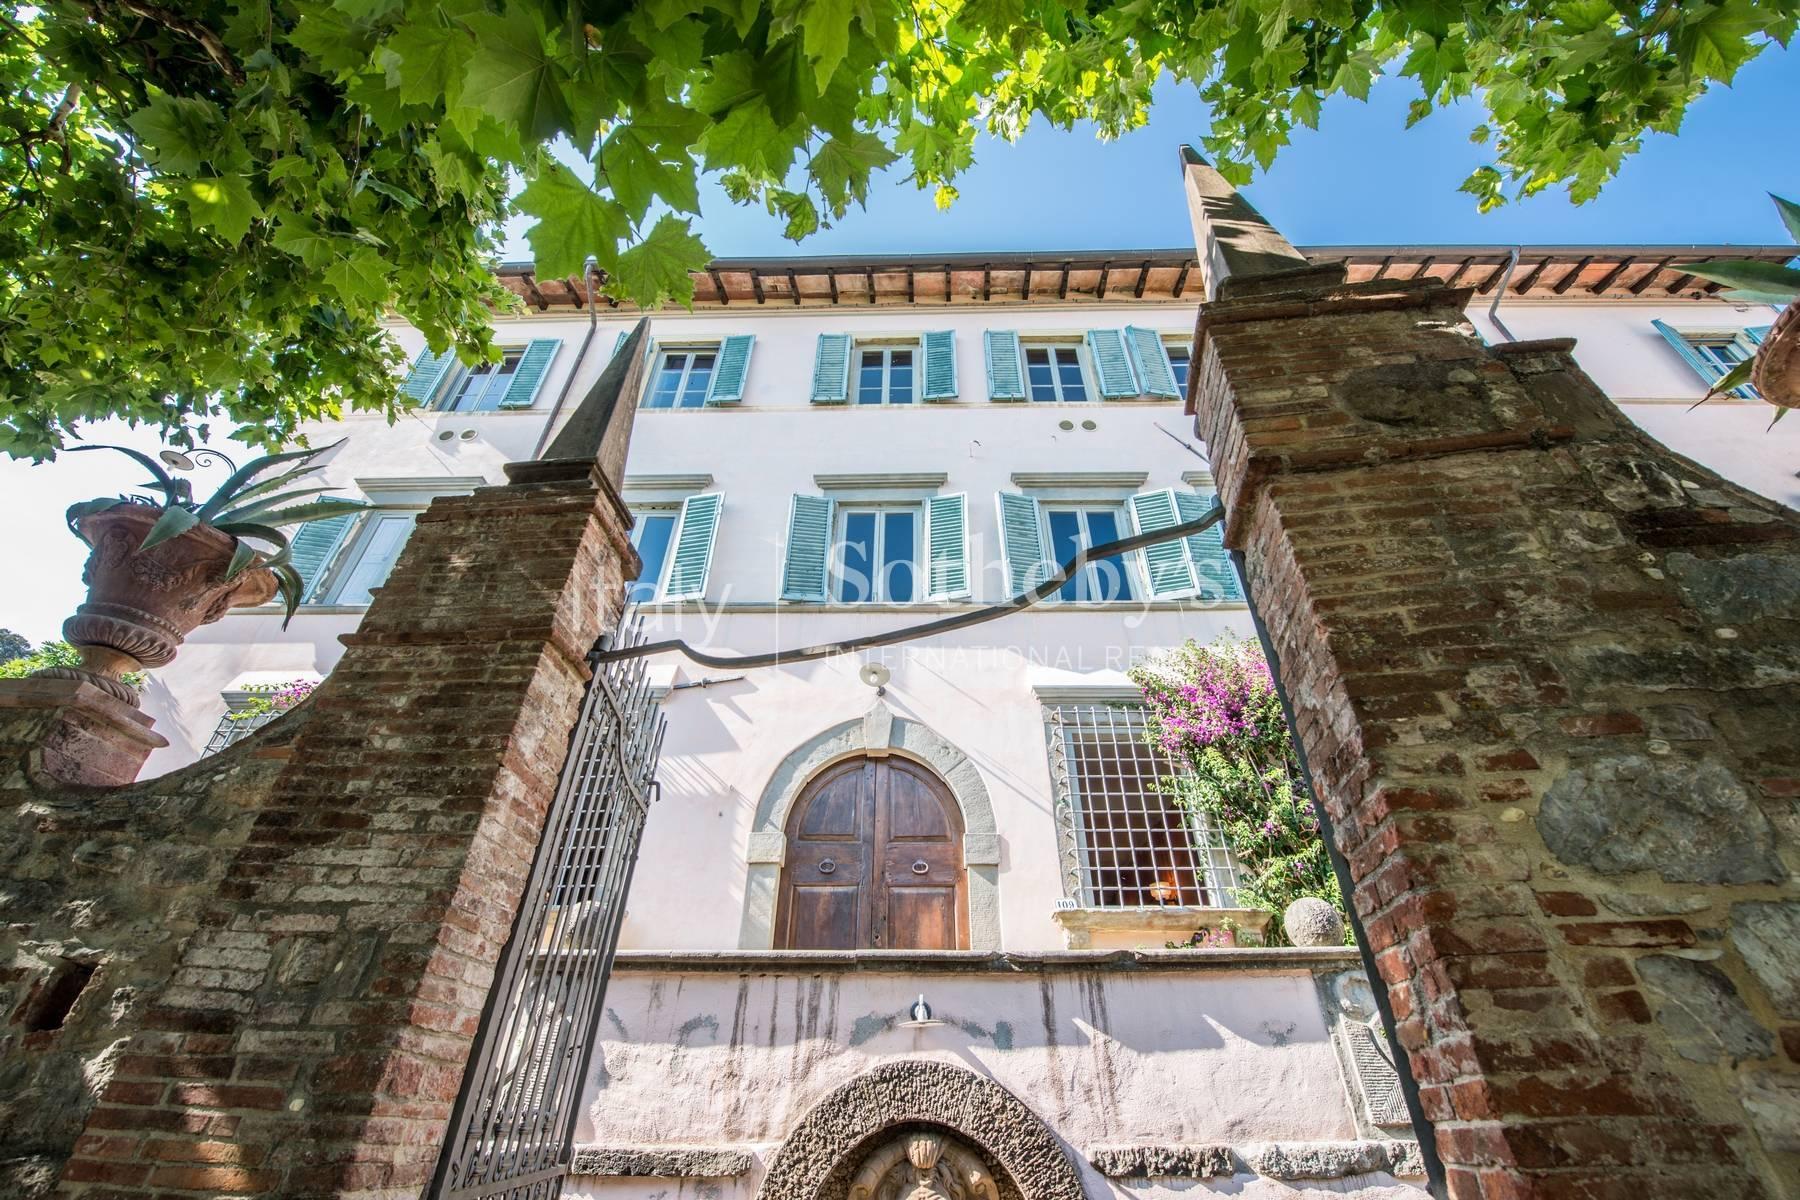 Splendida villa del 1700 nei pressi di Lucca - 2